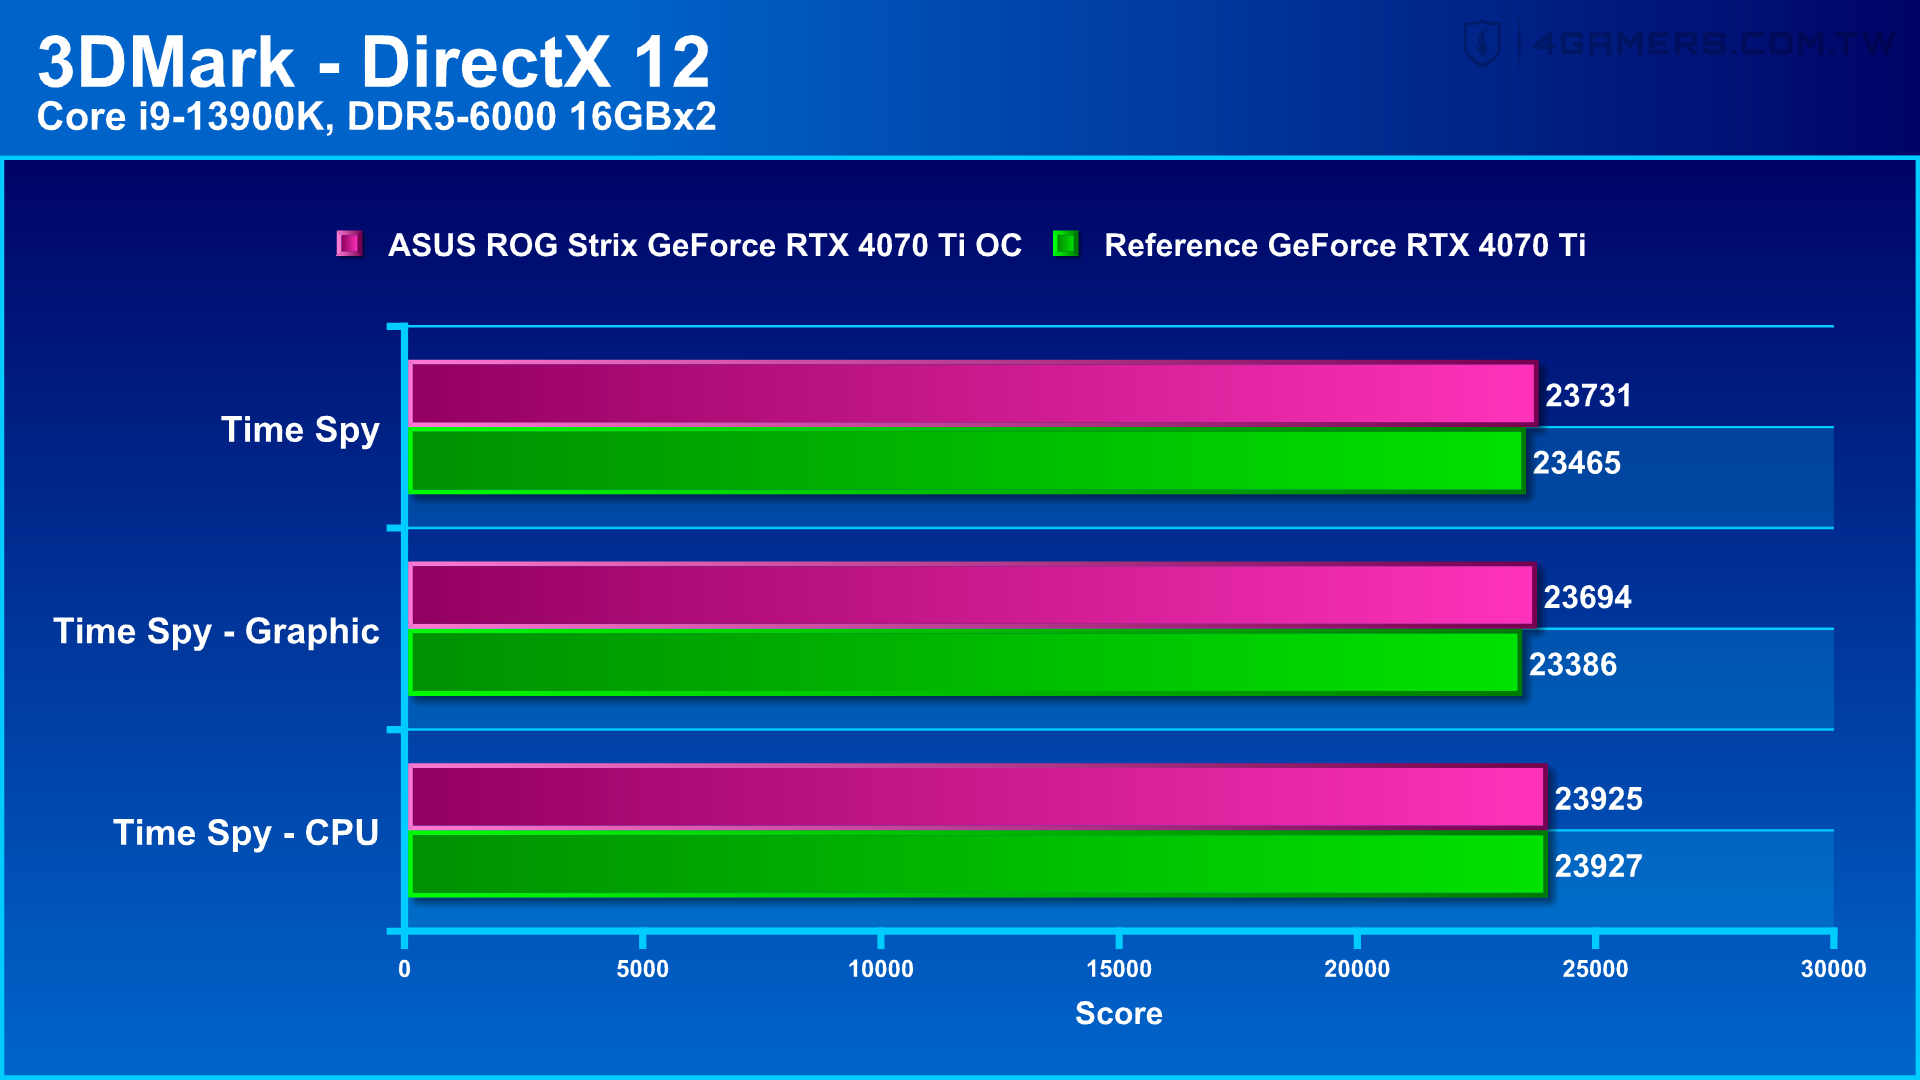 ASUS ROG Strix GeForce RTX 4070 Ti